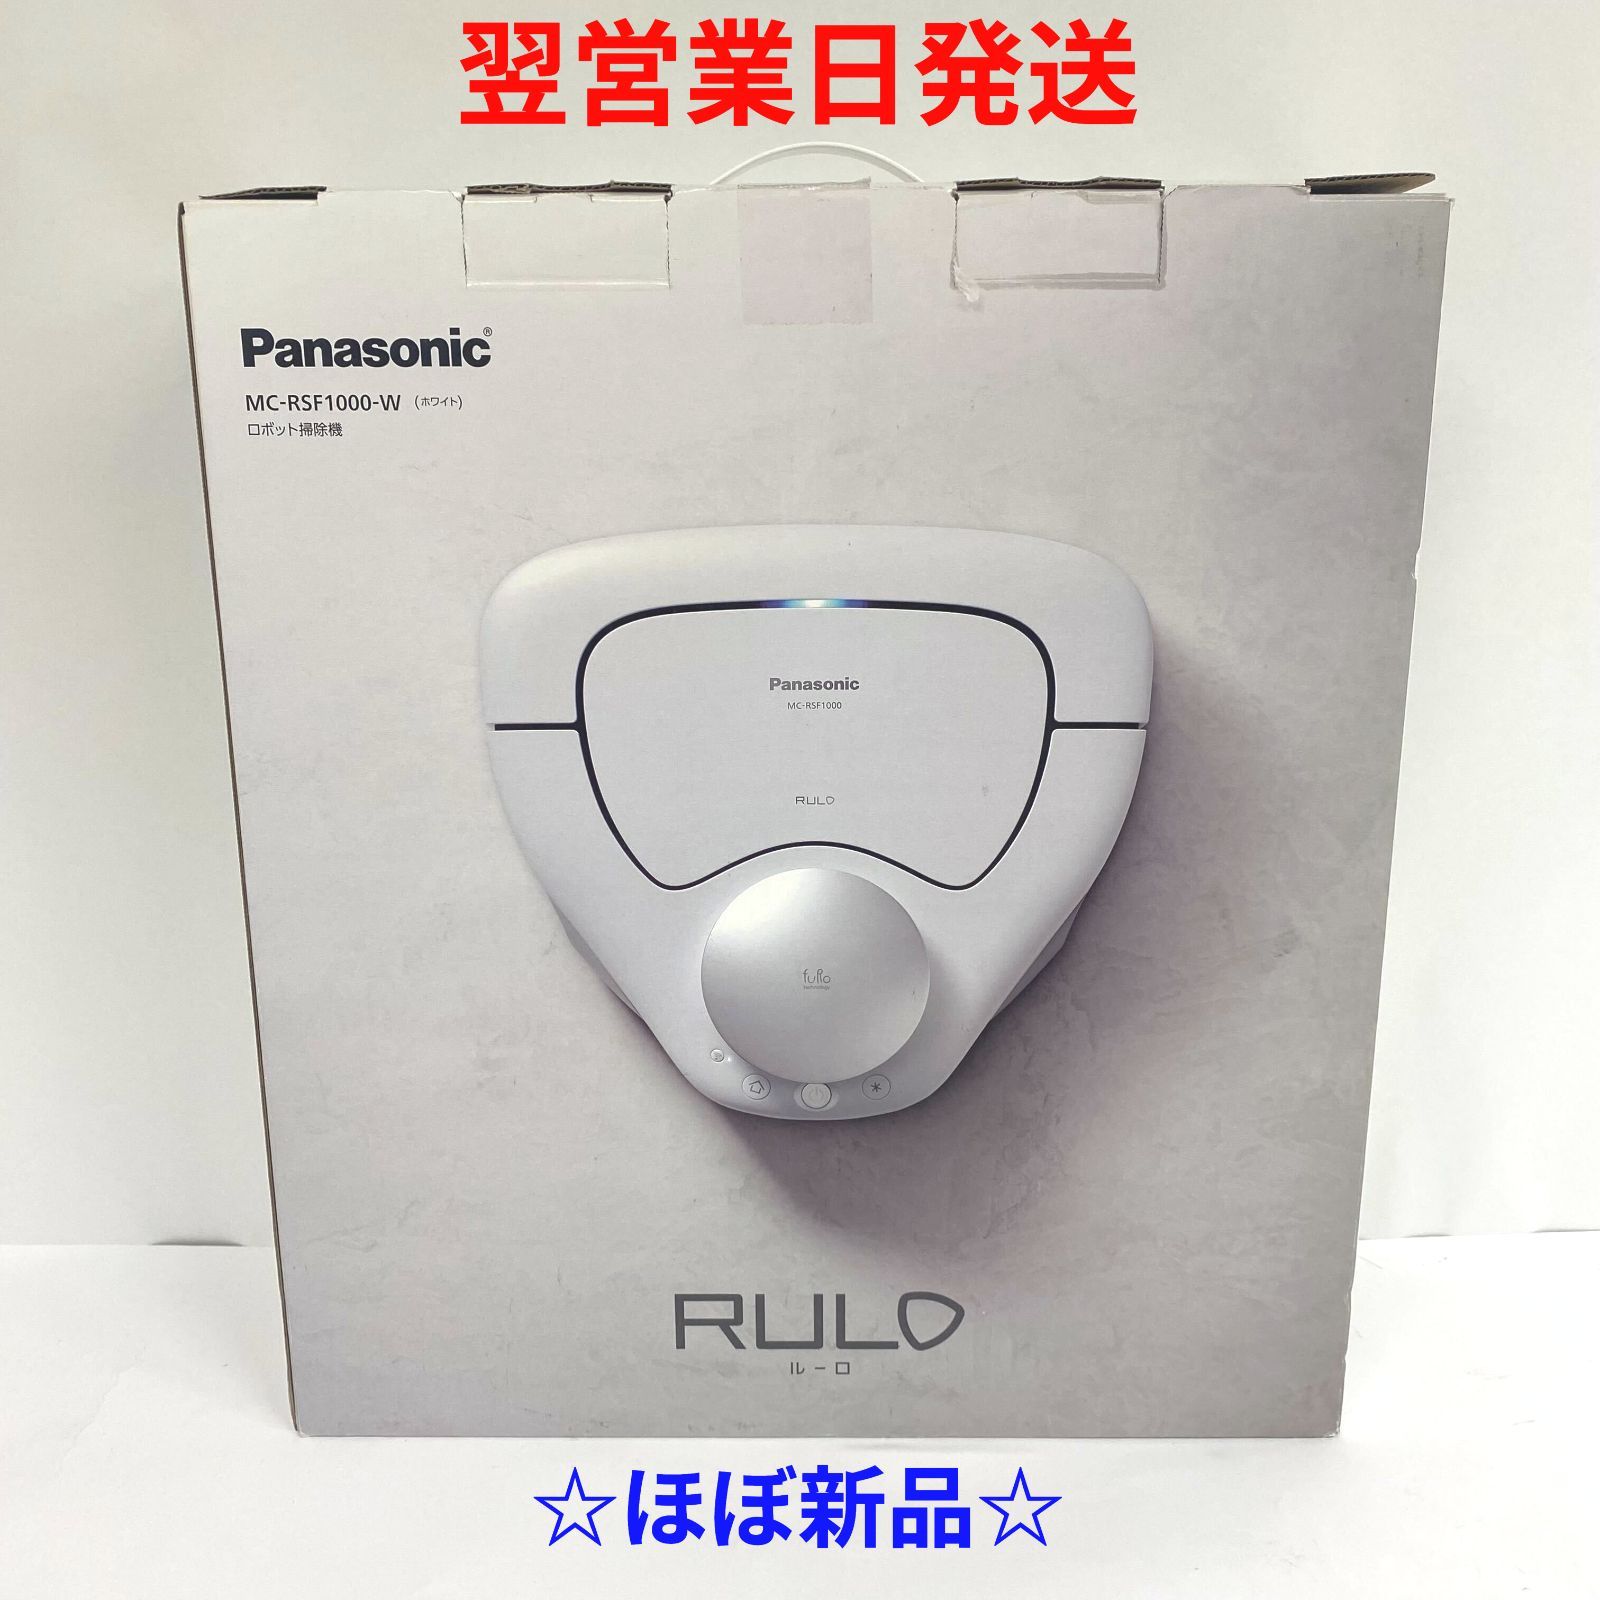 パナソニック ルーロ Panasonic RULO ほぼ新品